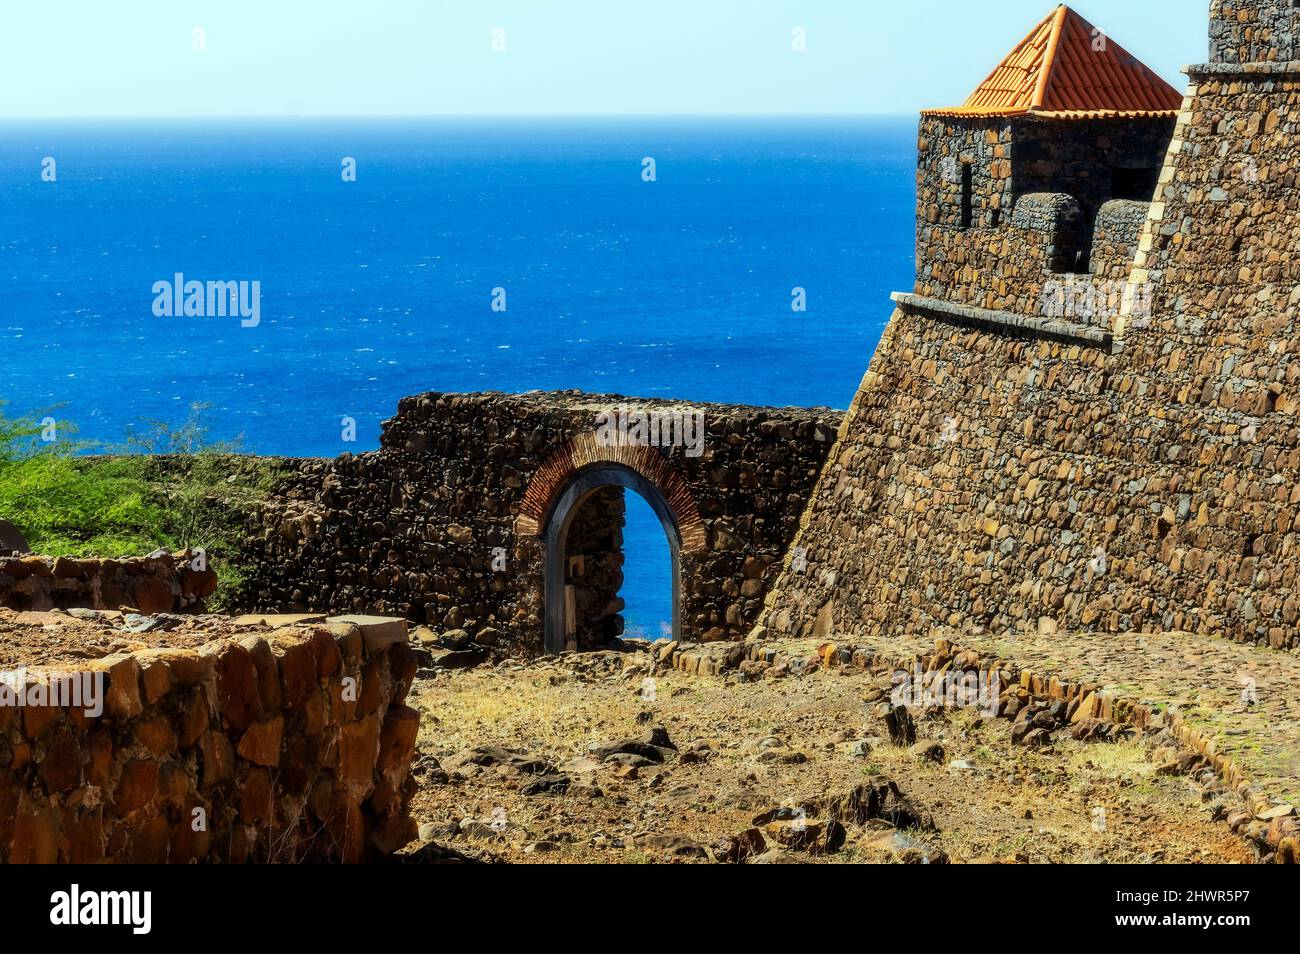 Cap-Vert, Sao Vicente, Mindelo, murs fortifiés de la ville côtière avec l'océan Atlantique en arrière-plan Banque D'Images